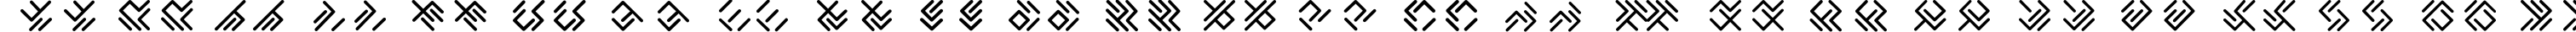 Пример написания английского алфавита шрифтом EPTA GLYPHS